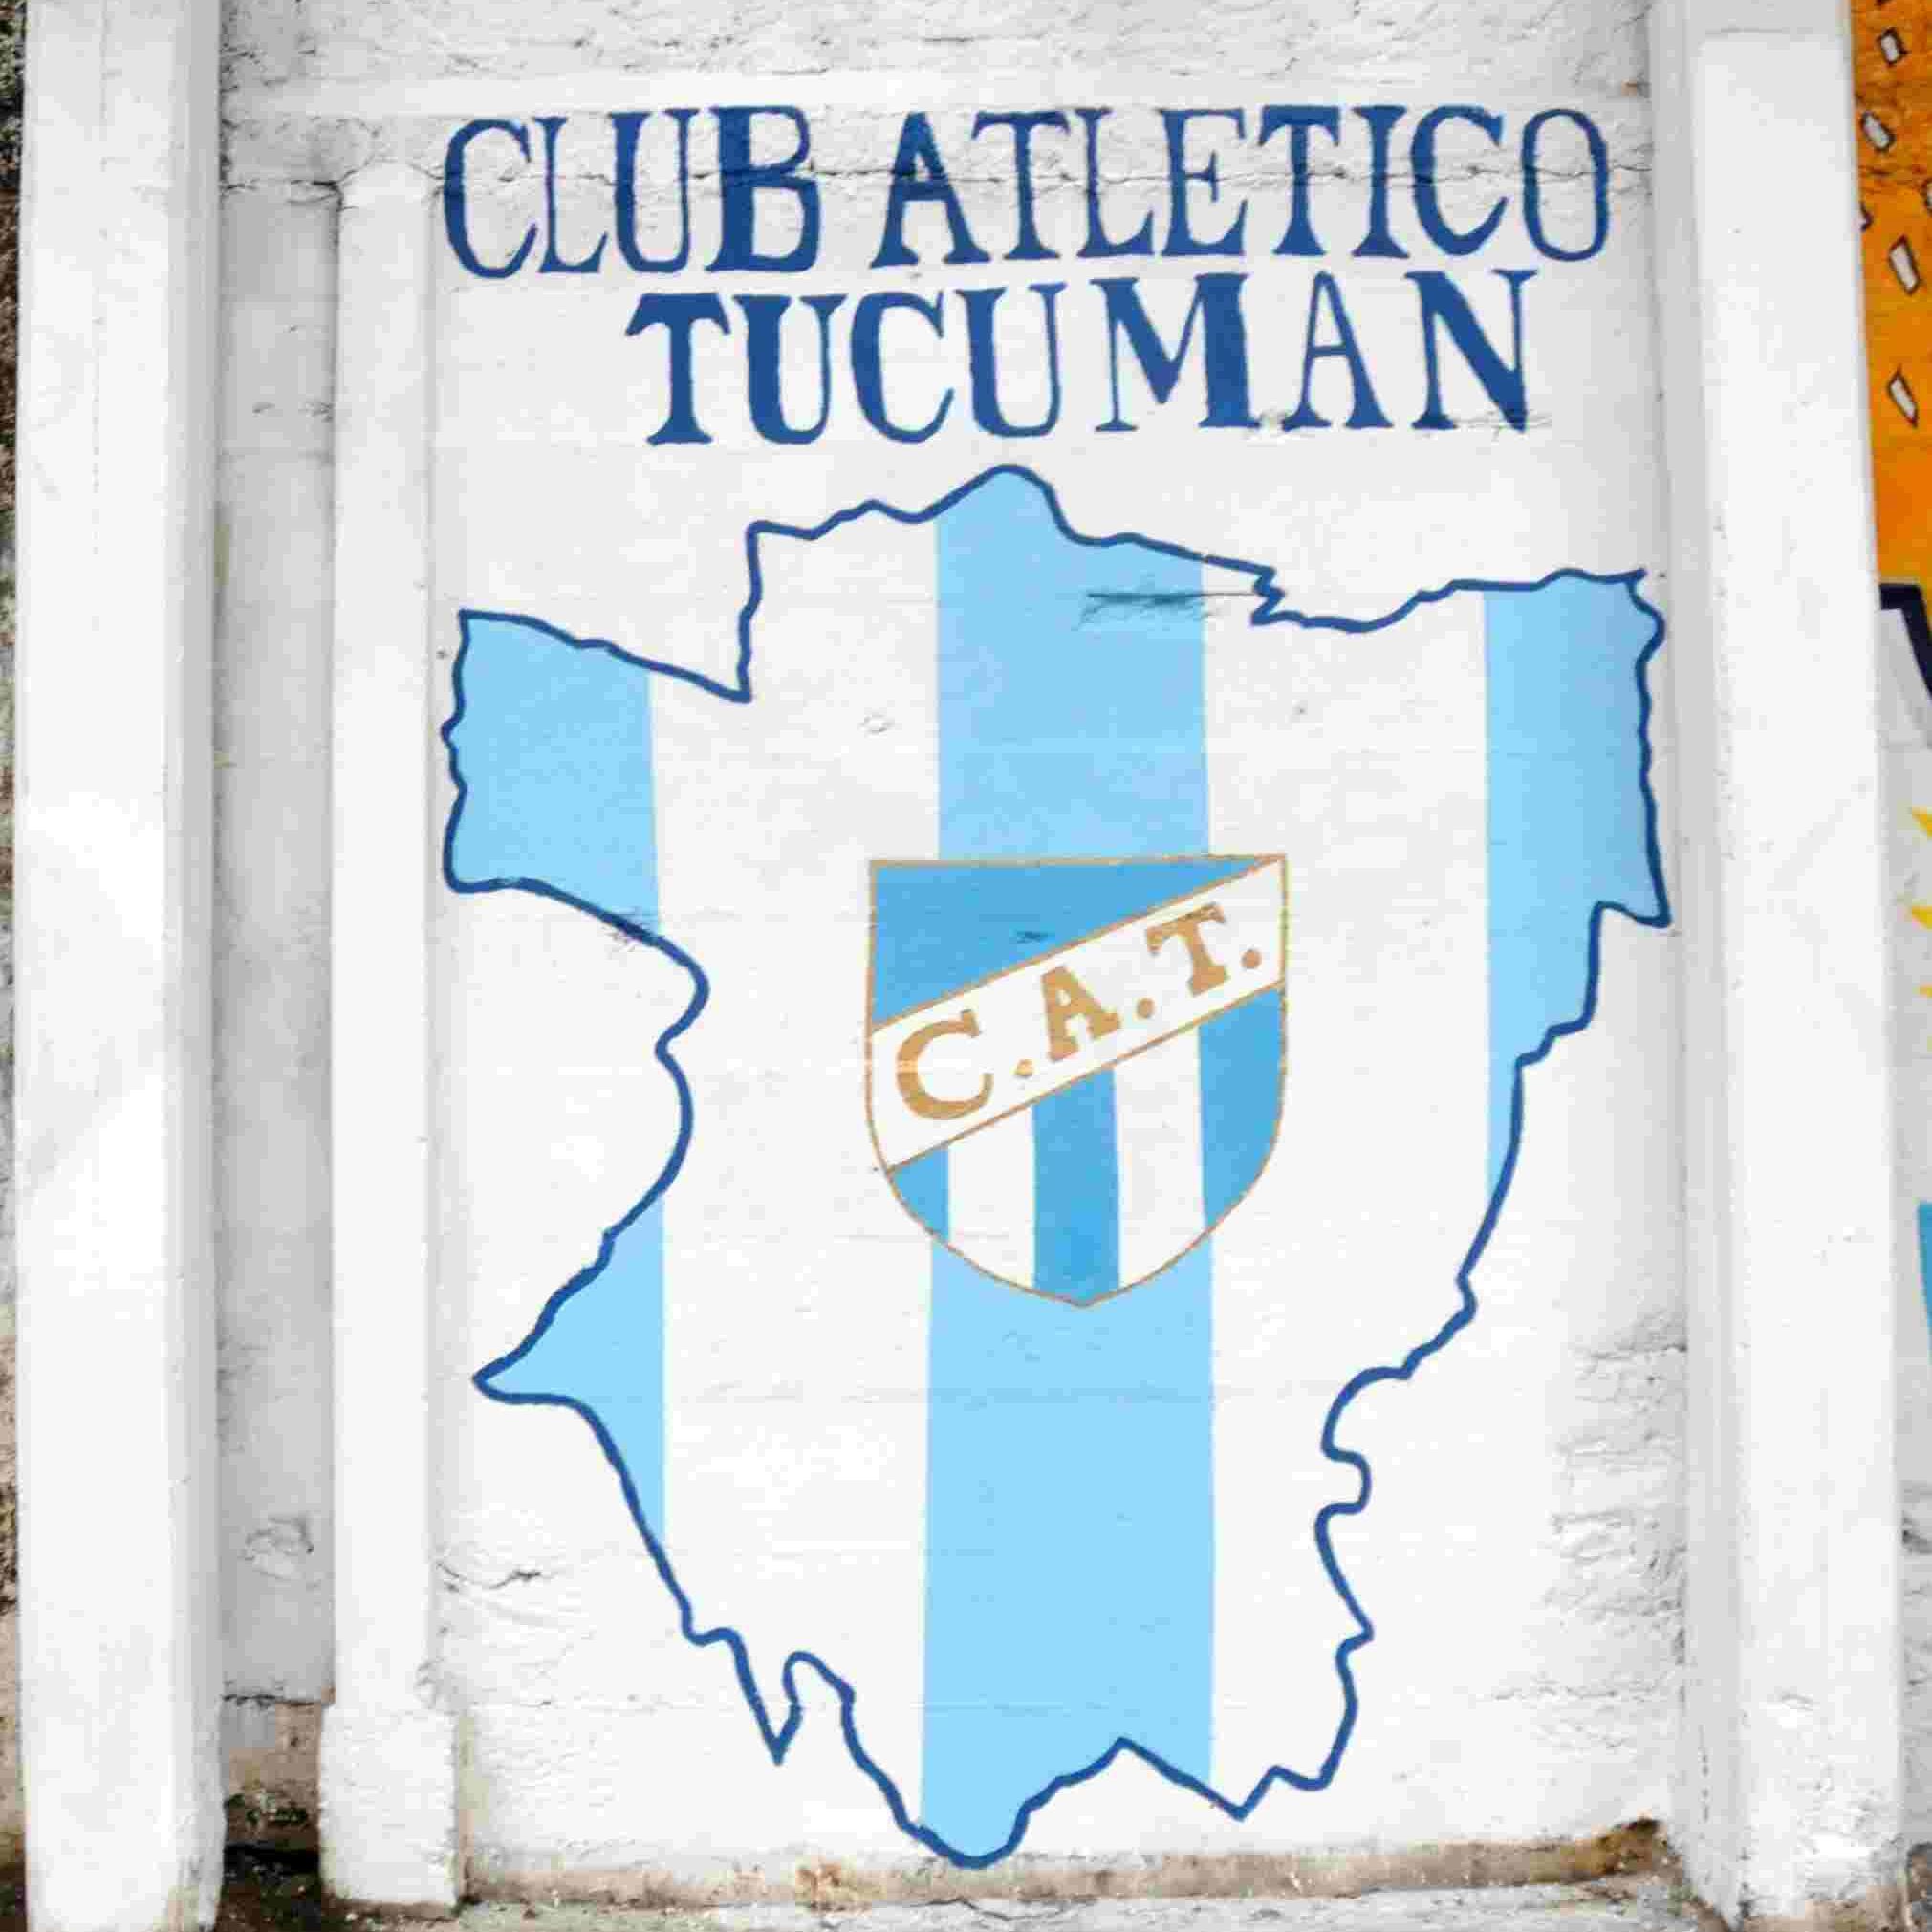 Atlético es Tucumán on Twitter: "Que hermoso ser hincha de ...